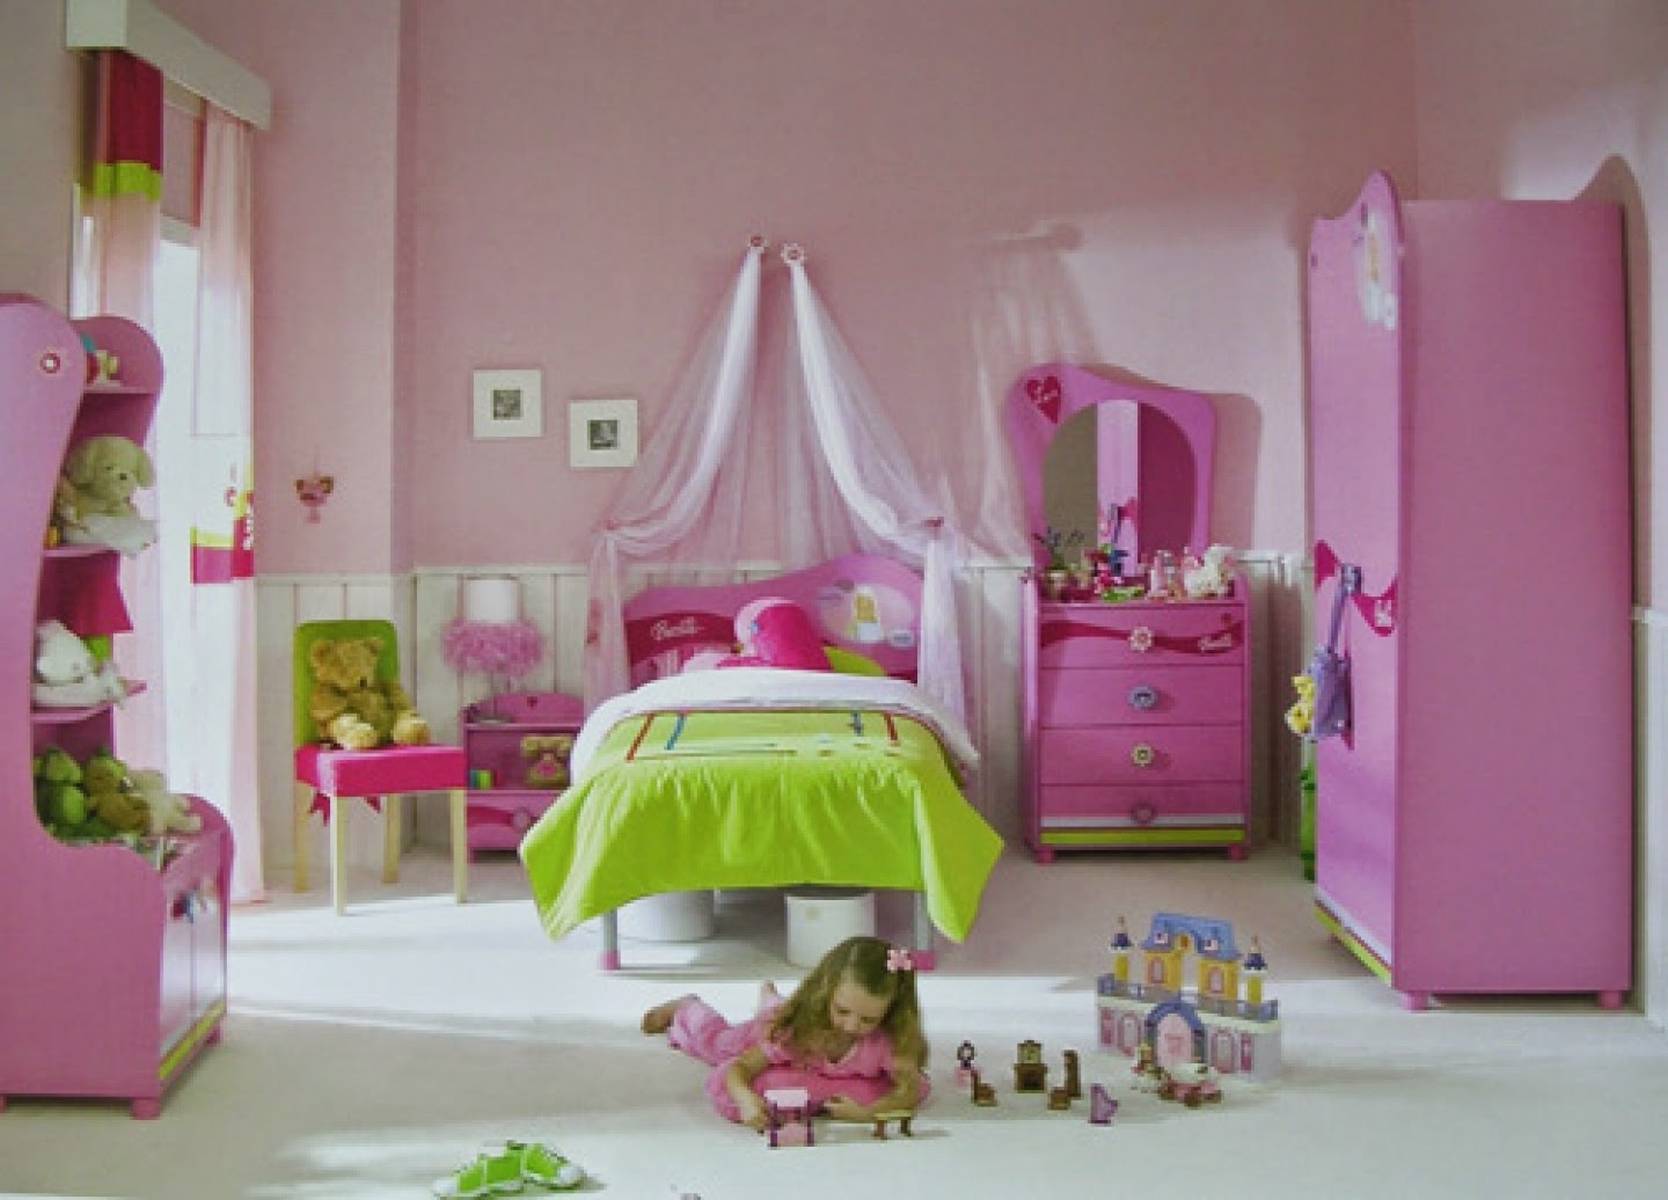 15 - Dora The Explorer Bedroom Theme